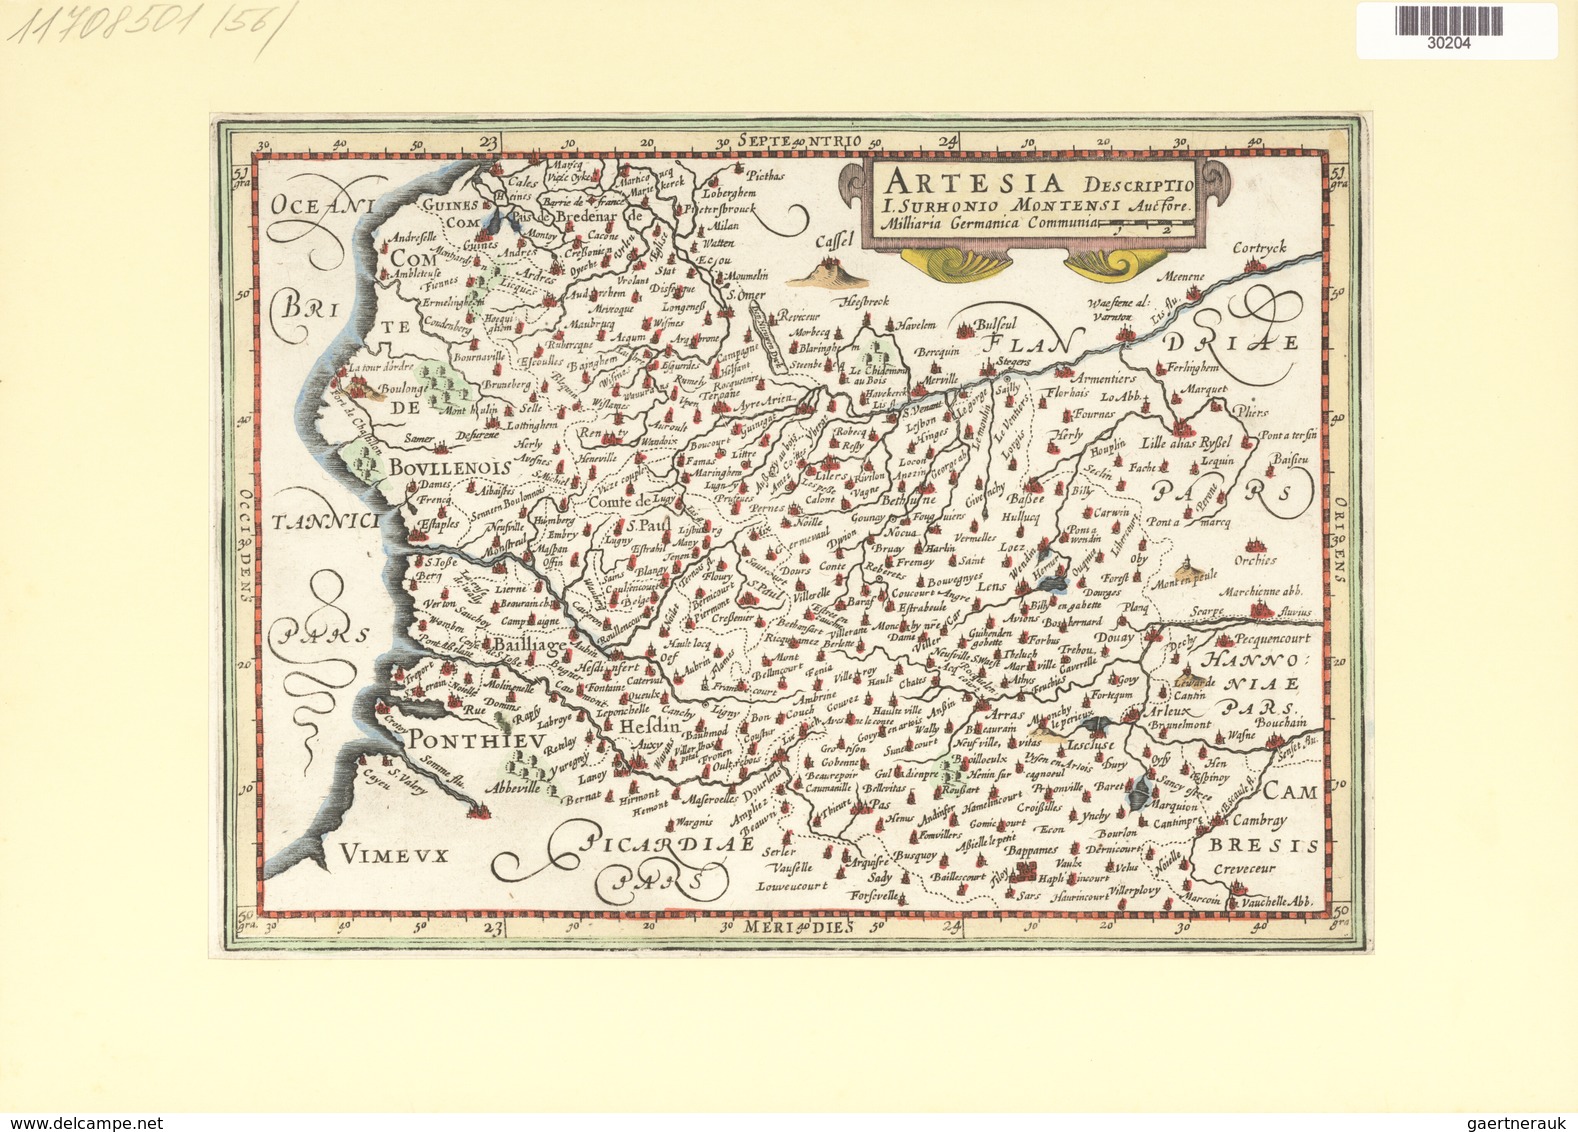 Landkarten Und Stiche: 1734. Artesia Descriptio, Published In The Mercator Atlas Minor 1734 Edition. - Geography